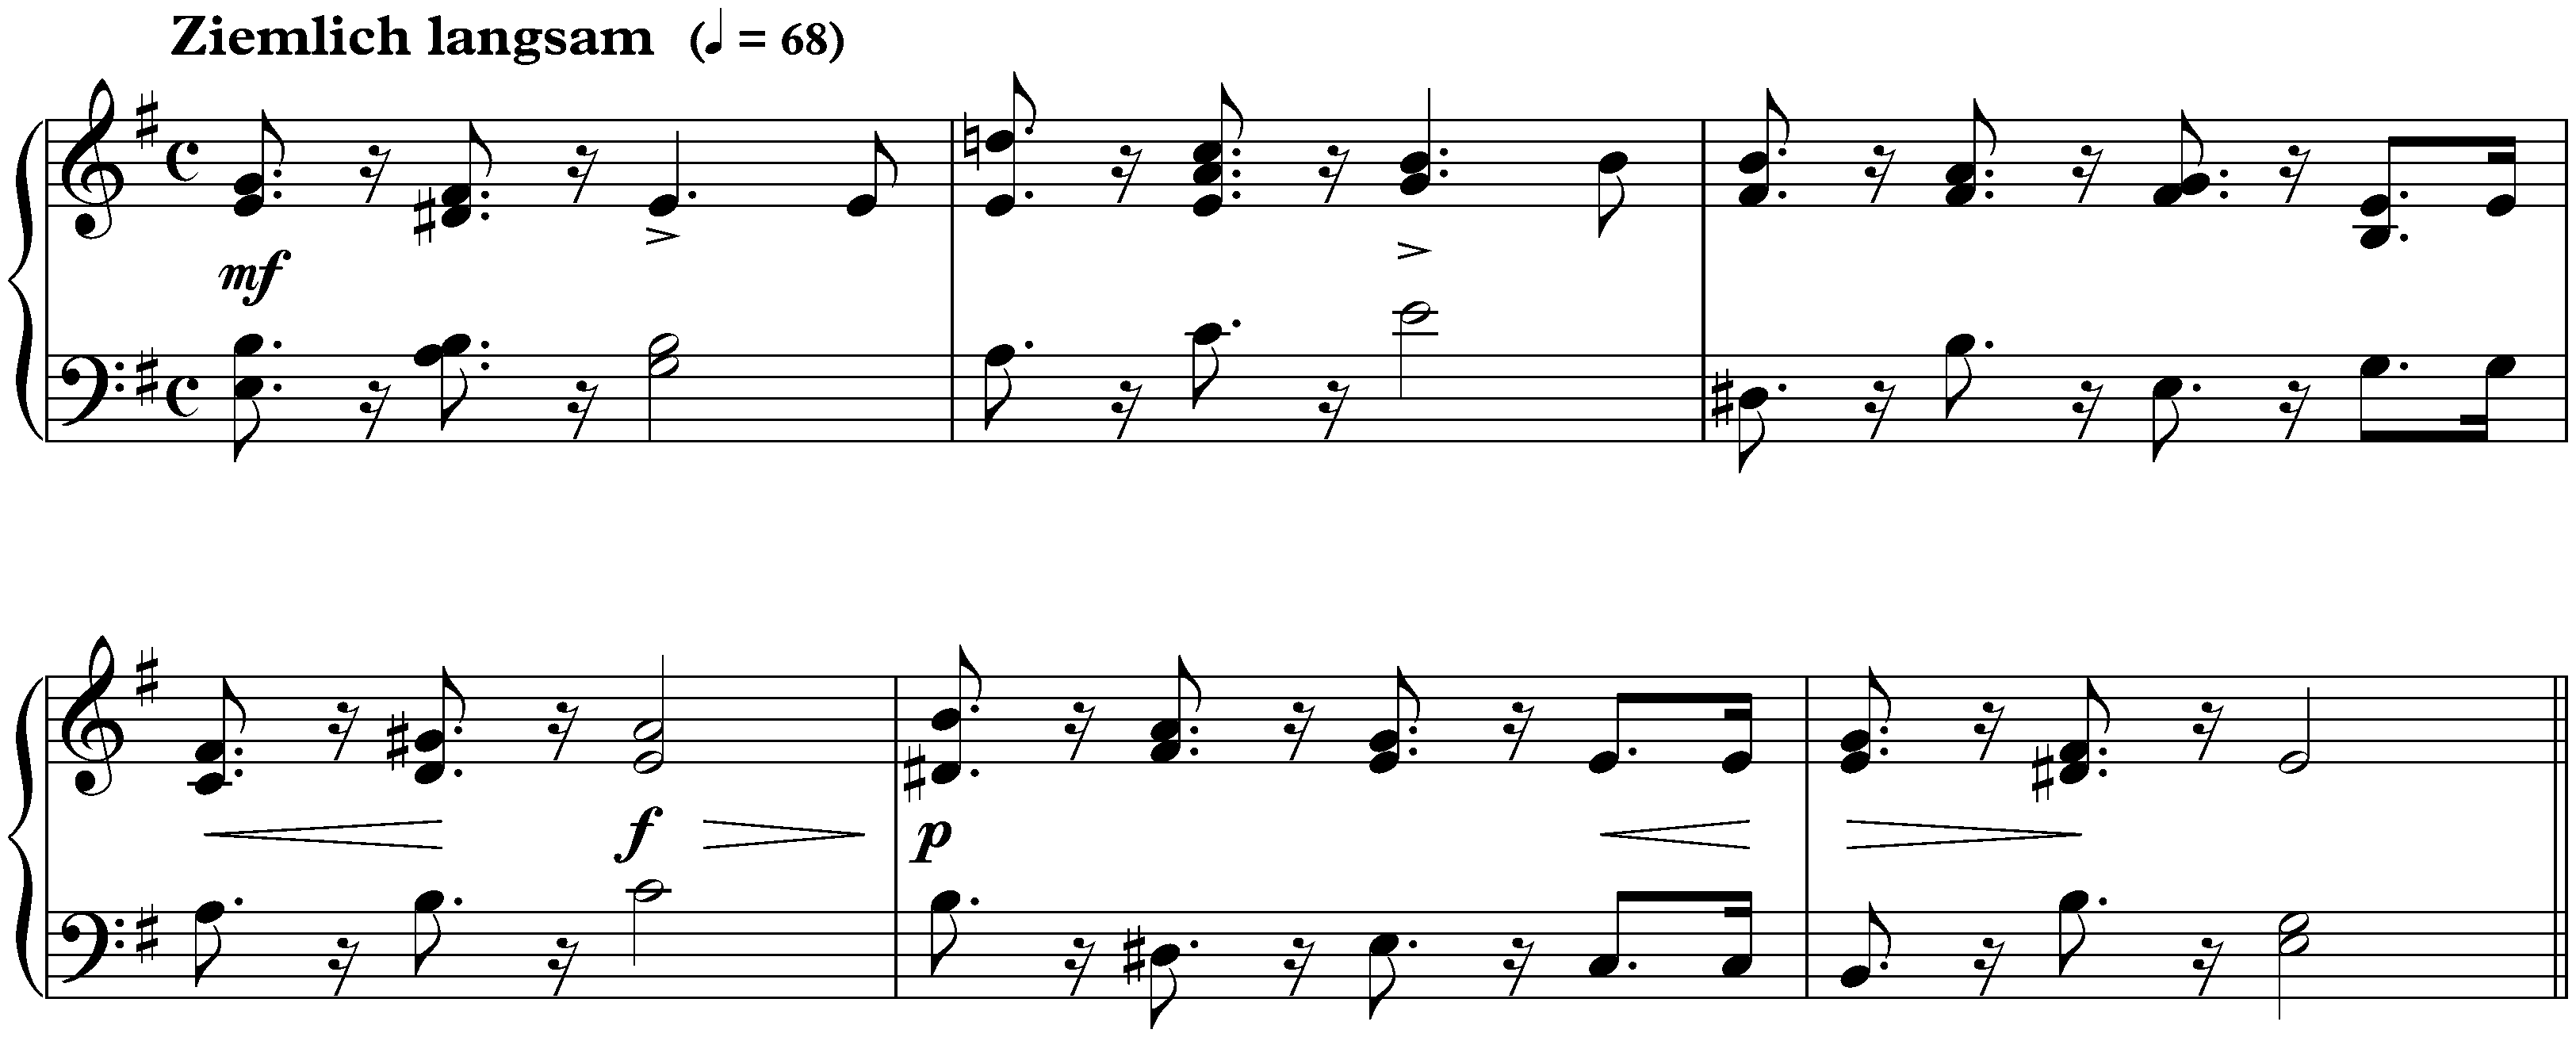 Sonate für die Jugend in G major, op. 118 no. 1; 2. Thema mit Variationen: Ziemlich langsam